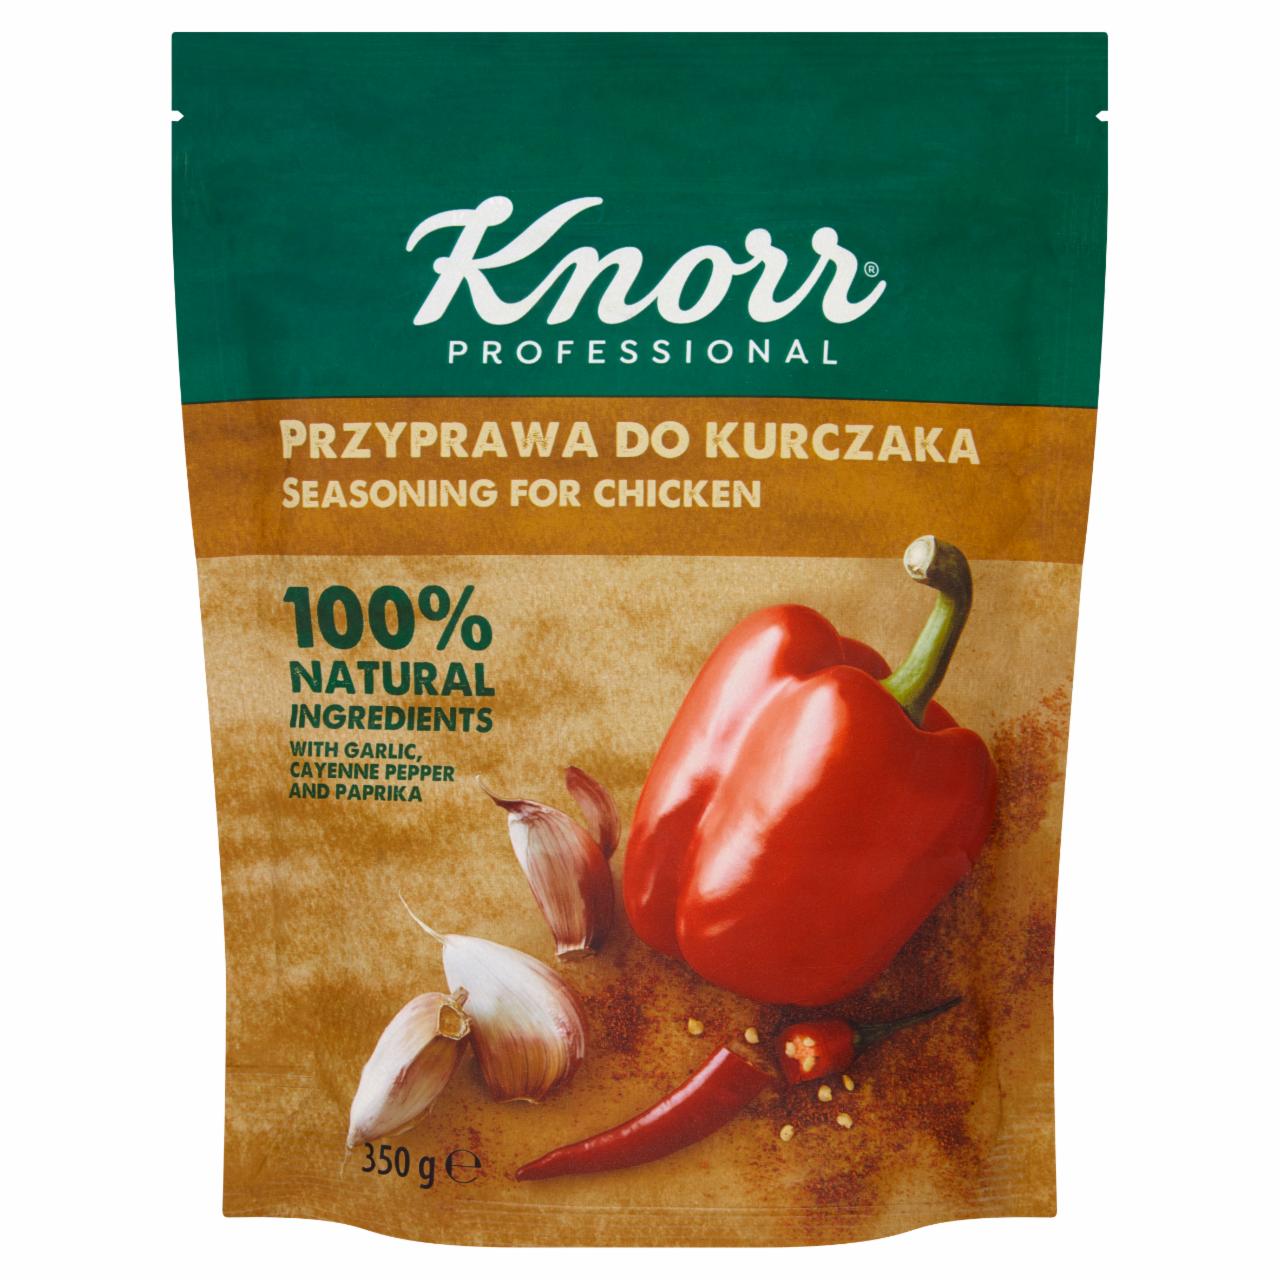 Zdjęcia - Knorr Professional Przyprawa do kurczaka 350 g